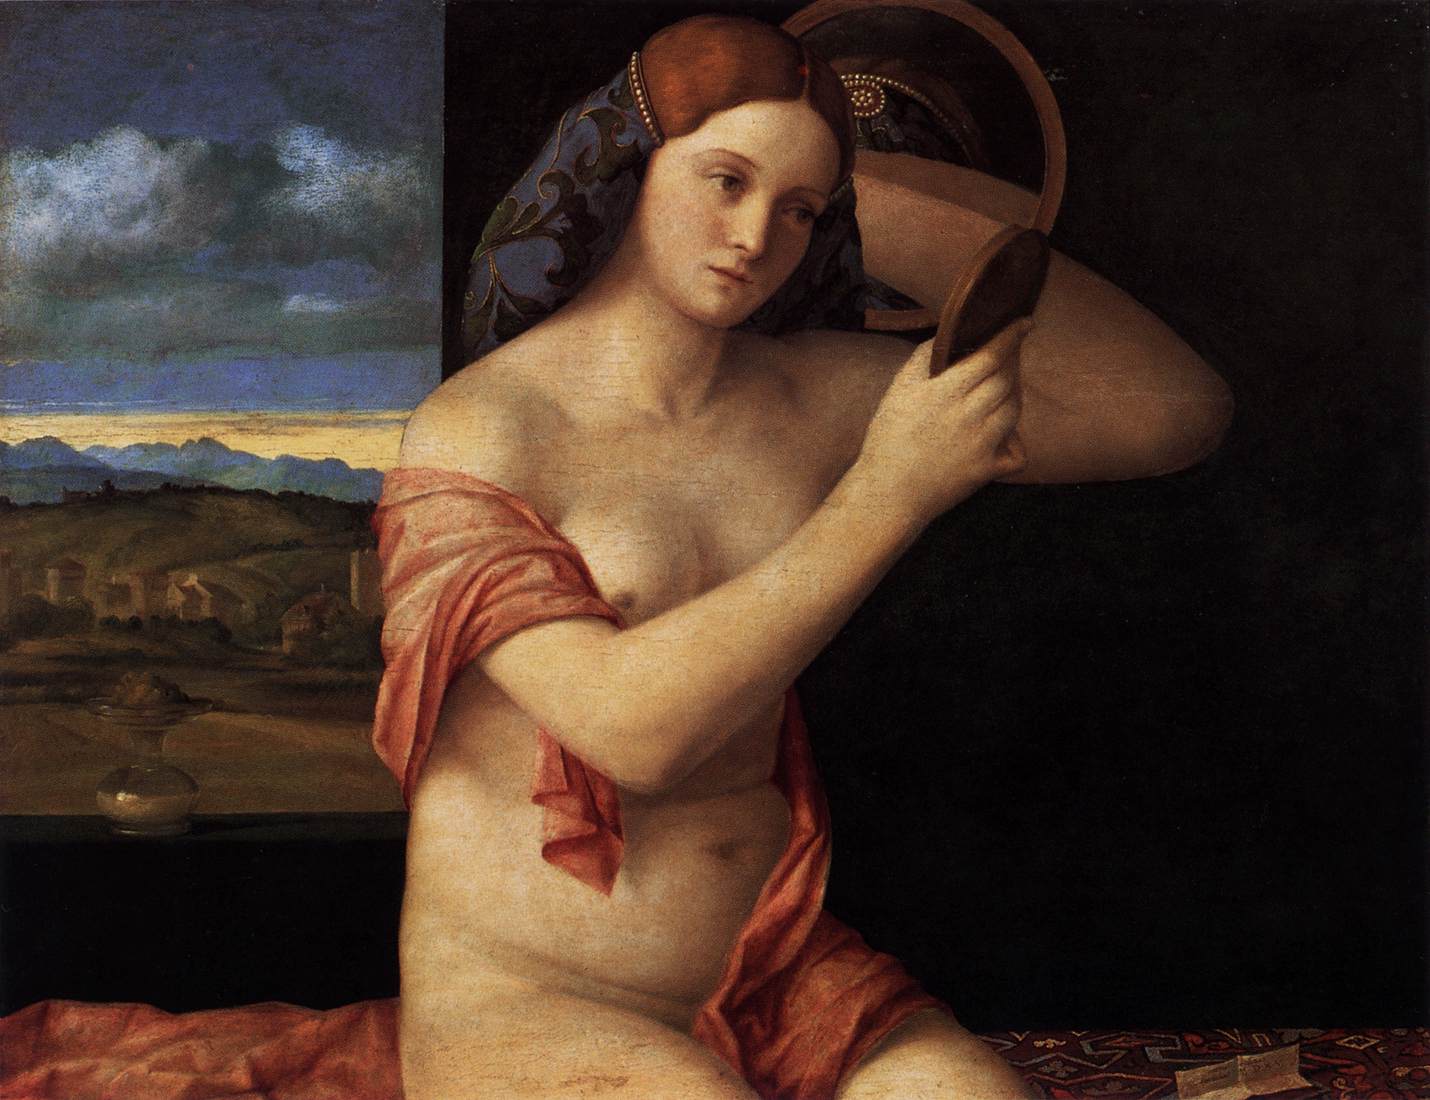 Giovane donna nuda davanti allo specchio